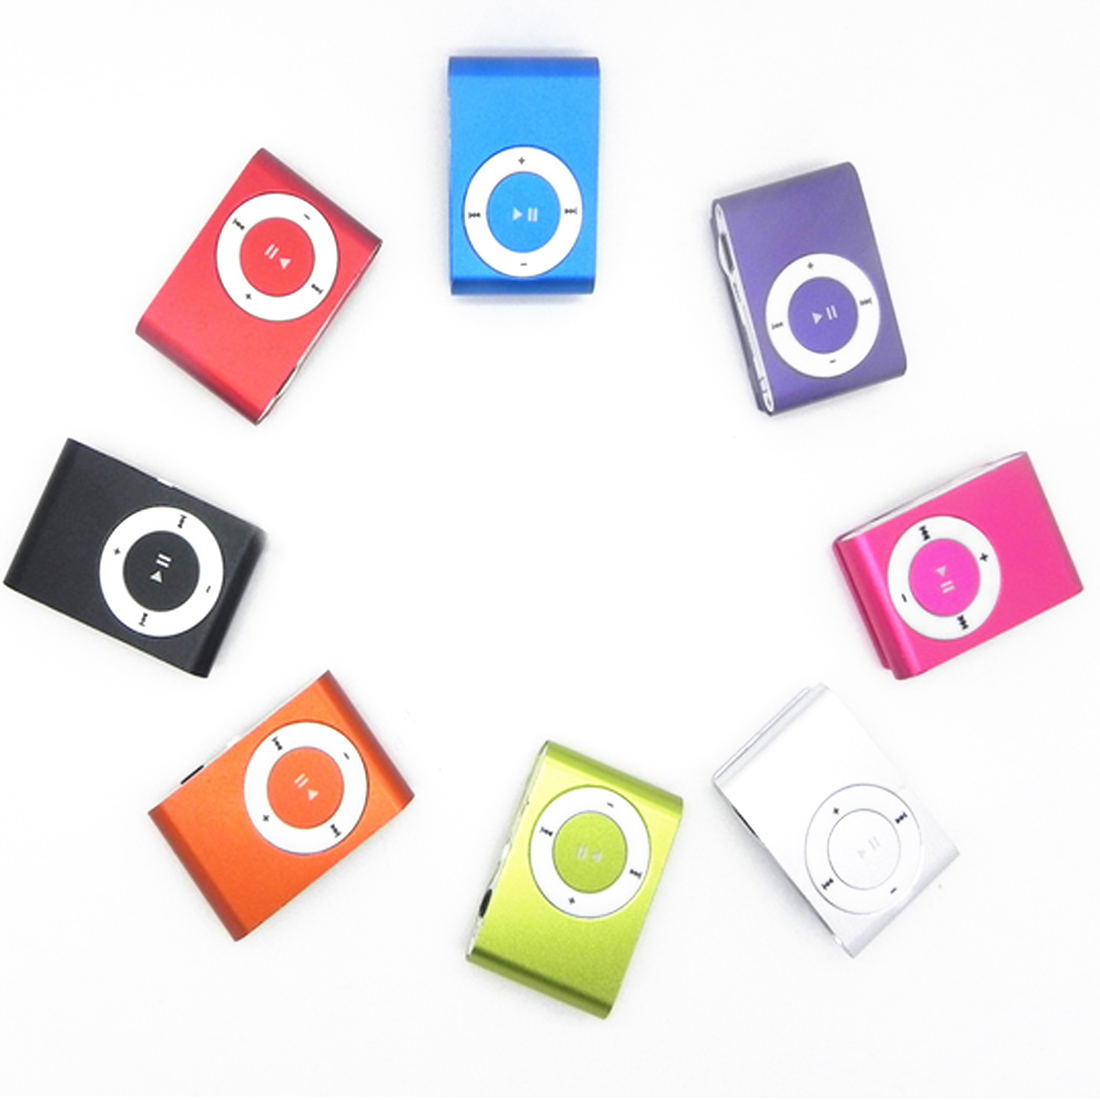 Centechia Draagbare Metalen Clip MP3 Speler Met 8 Snoep Kleuren Geen Geheugenkaart Muziekspeler Met Tf Slot